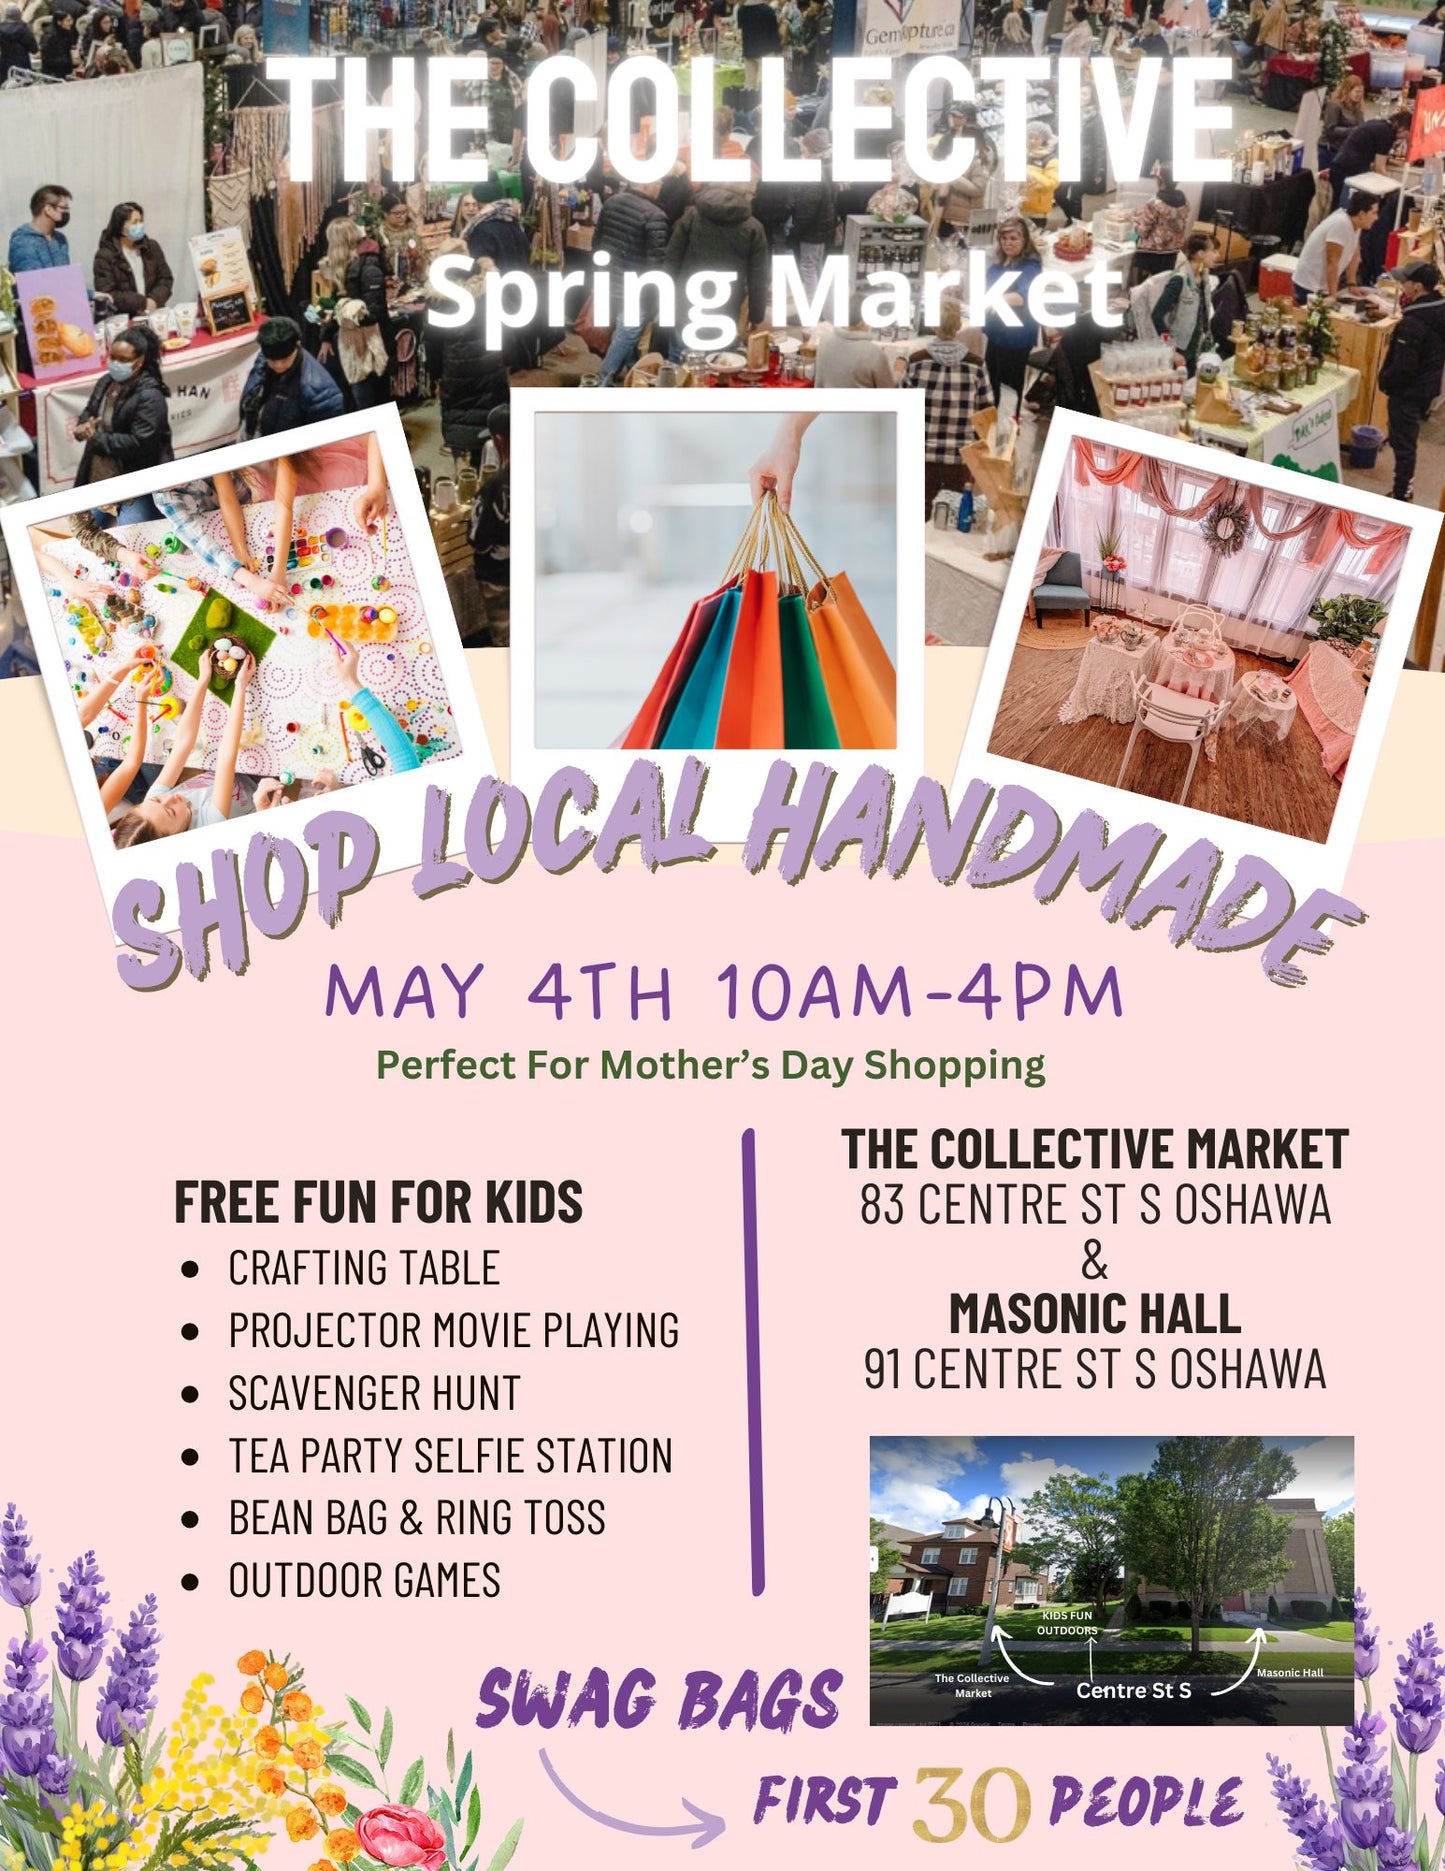 May 4th Spring Market